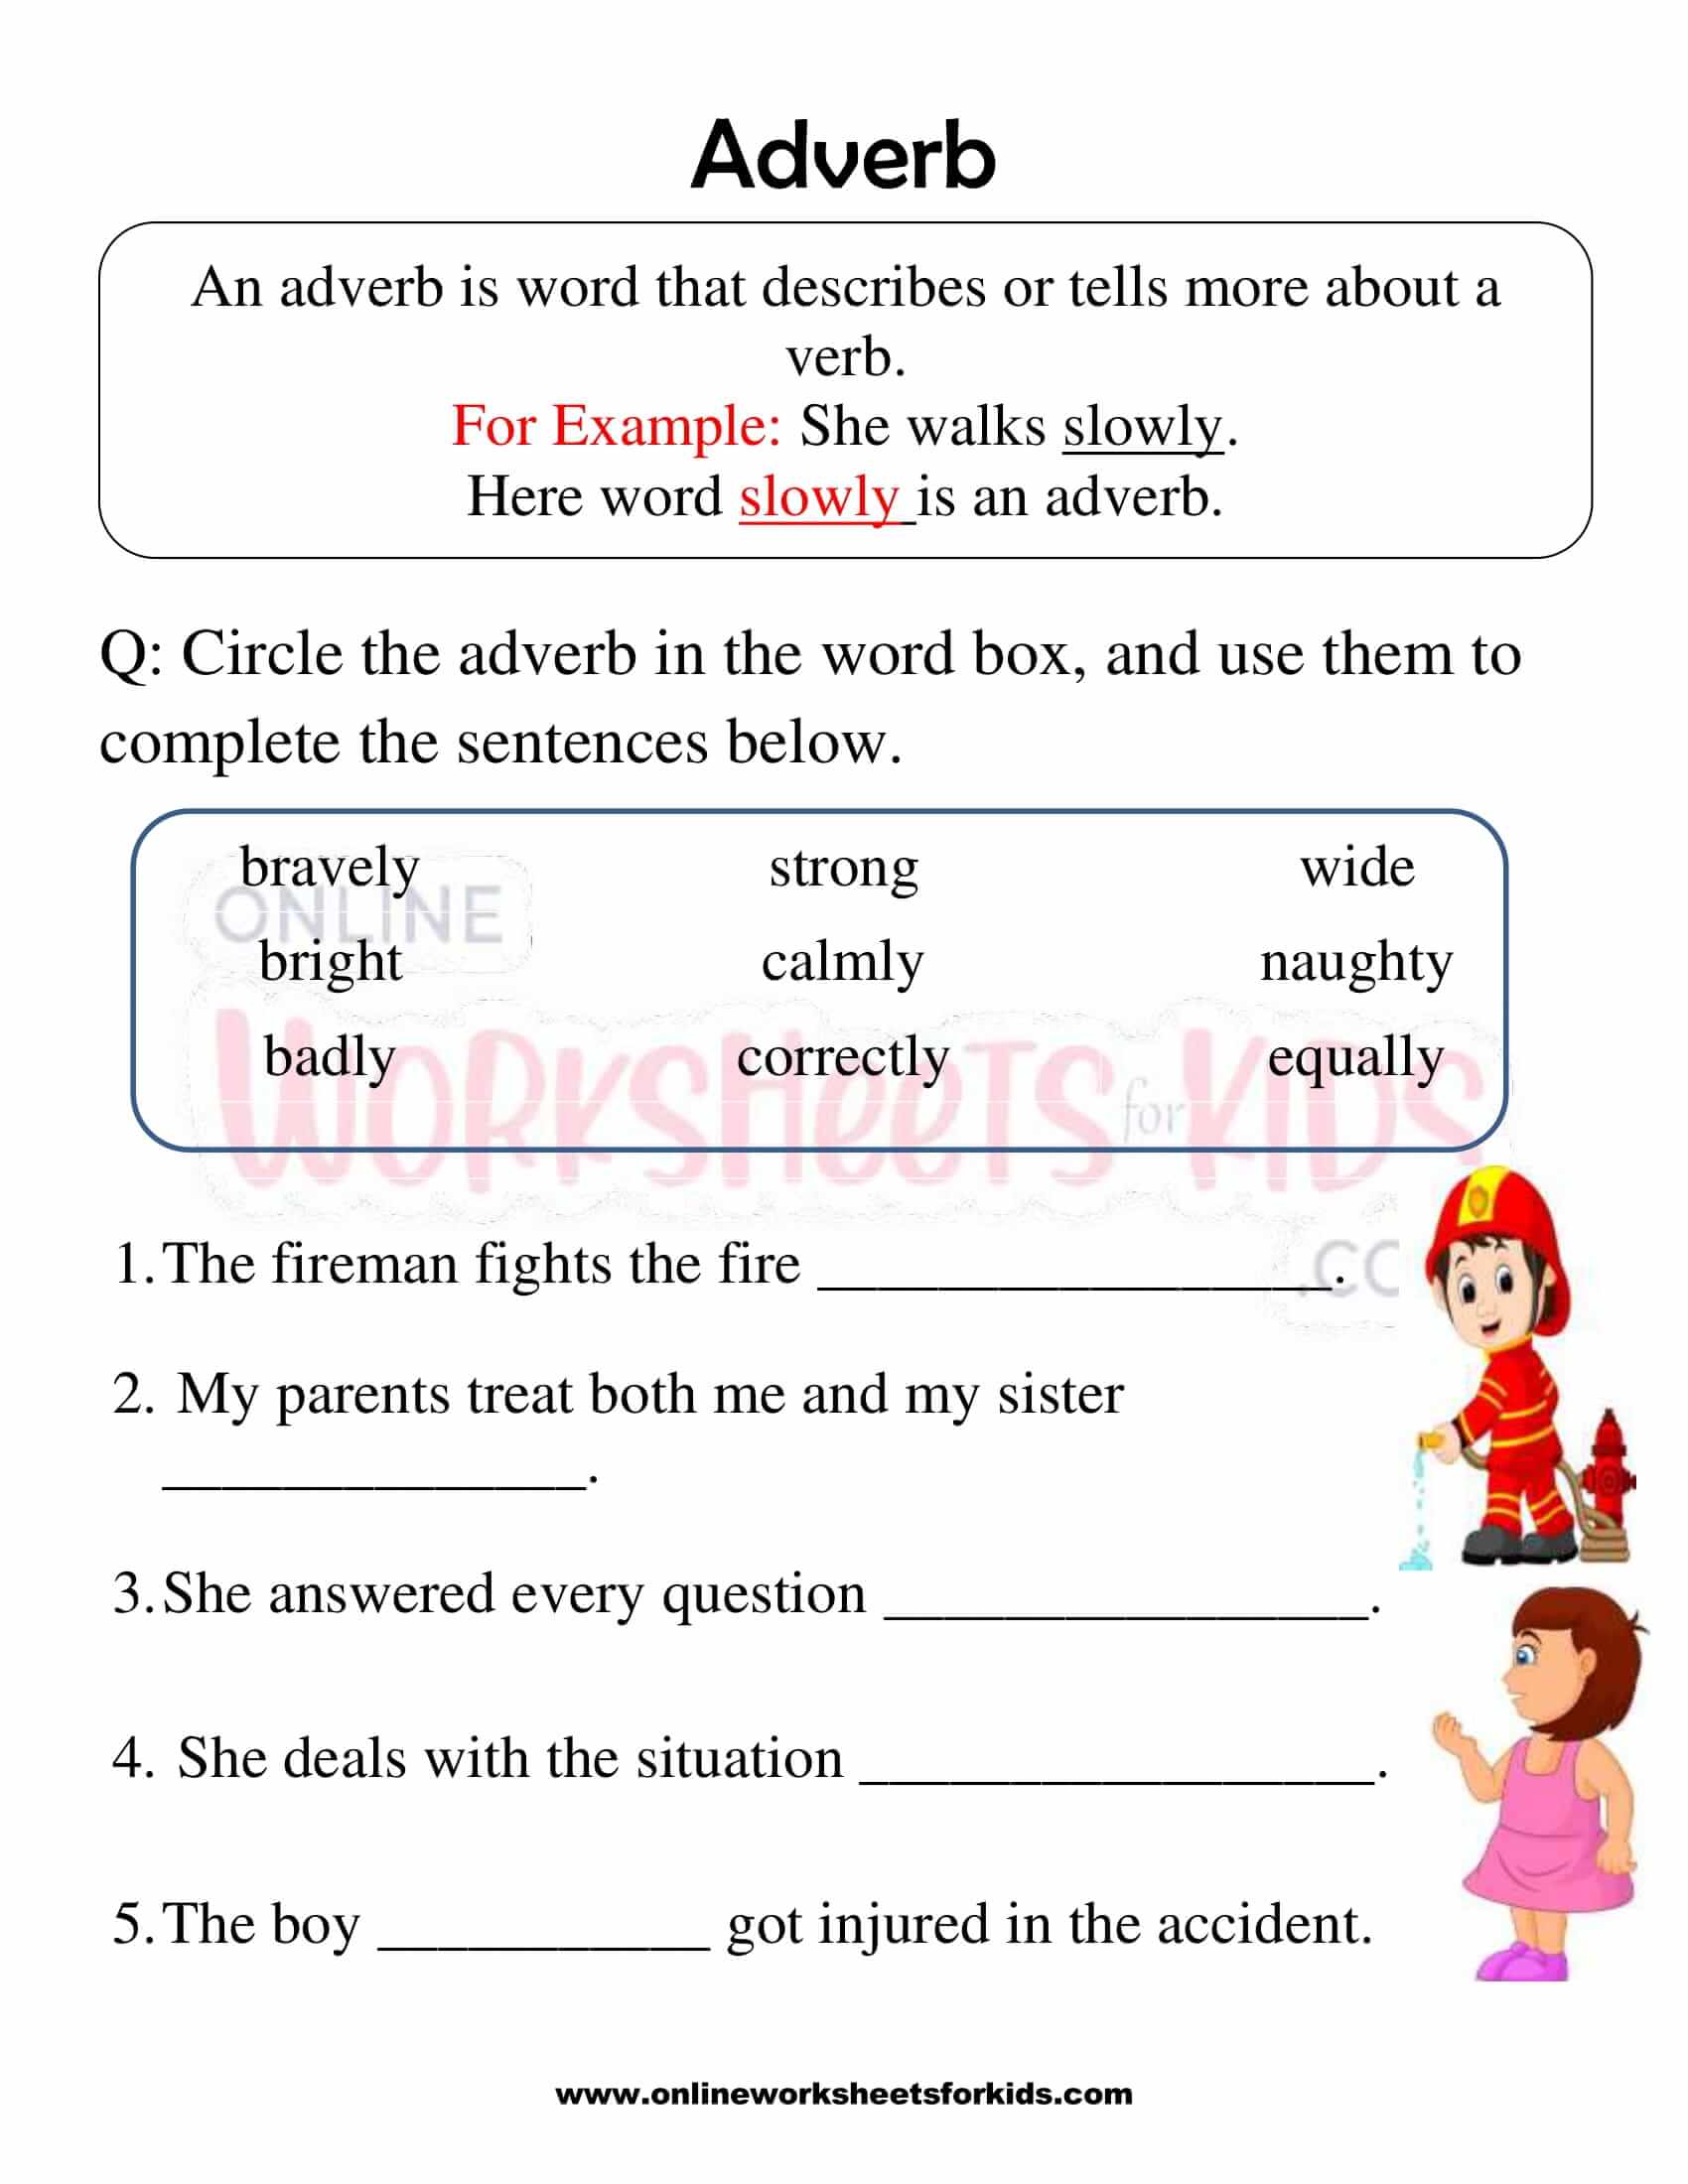 adverb-worksheet-2nd-grade